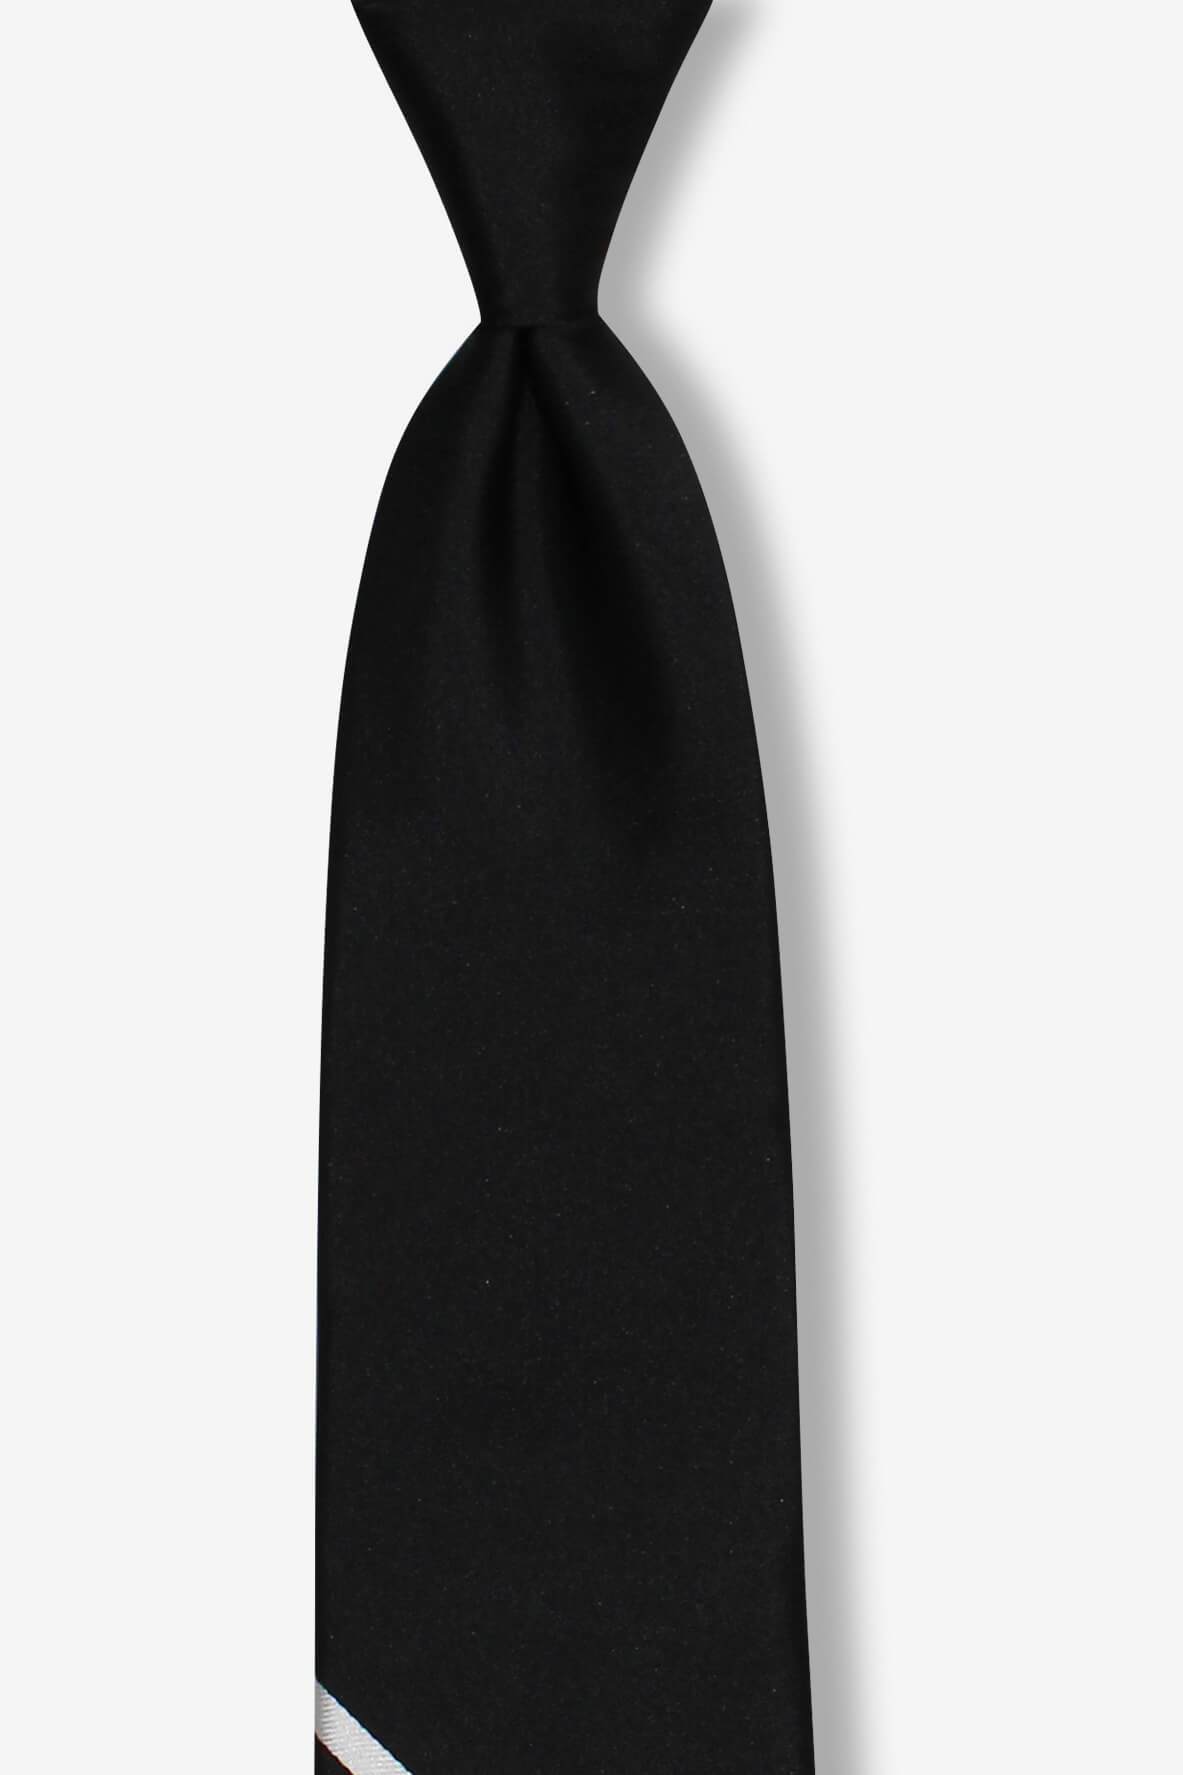 Black with Multi-Stripe Bottom Skinny Pre-tied Tie, Tie, GoTie